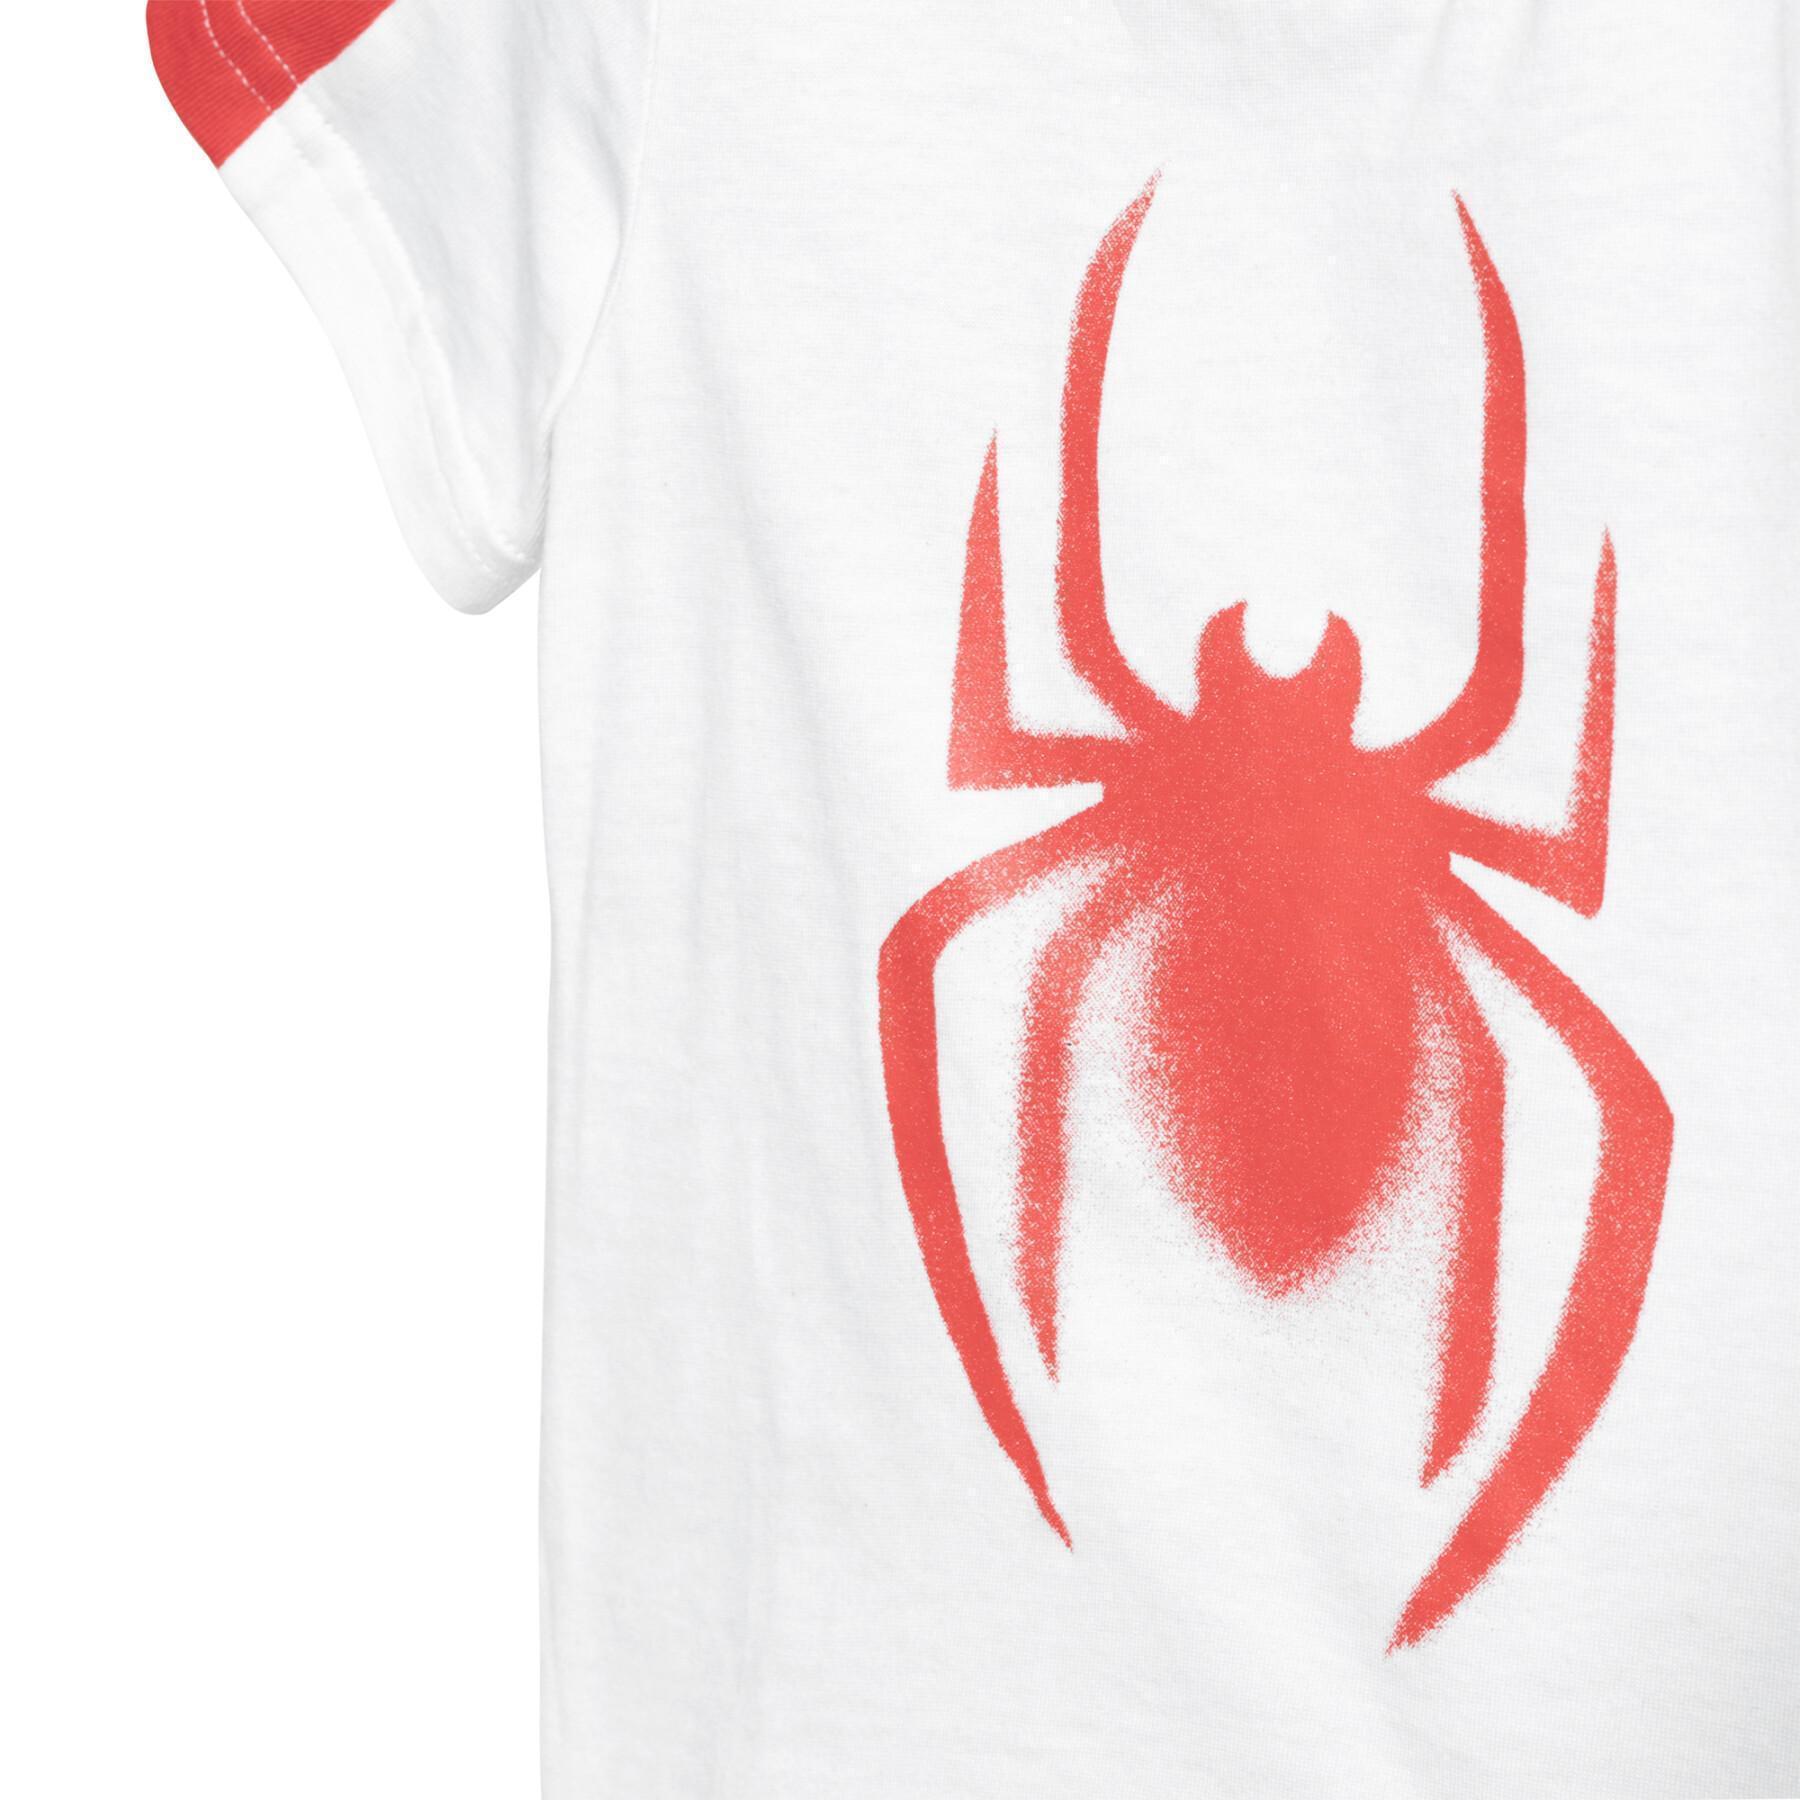 Zestaw dziecięcy adidas Marvel Spider-Man Summer